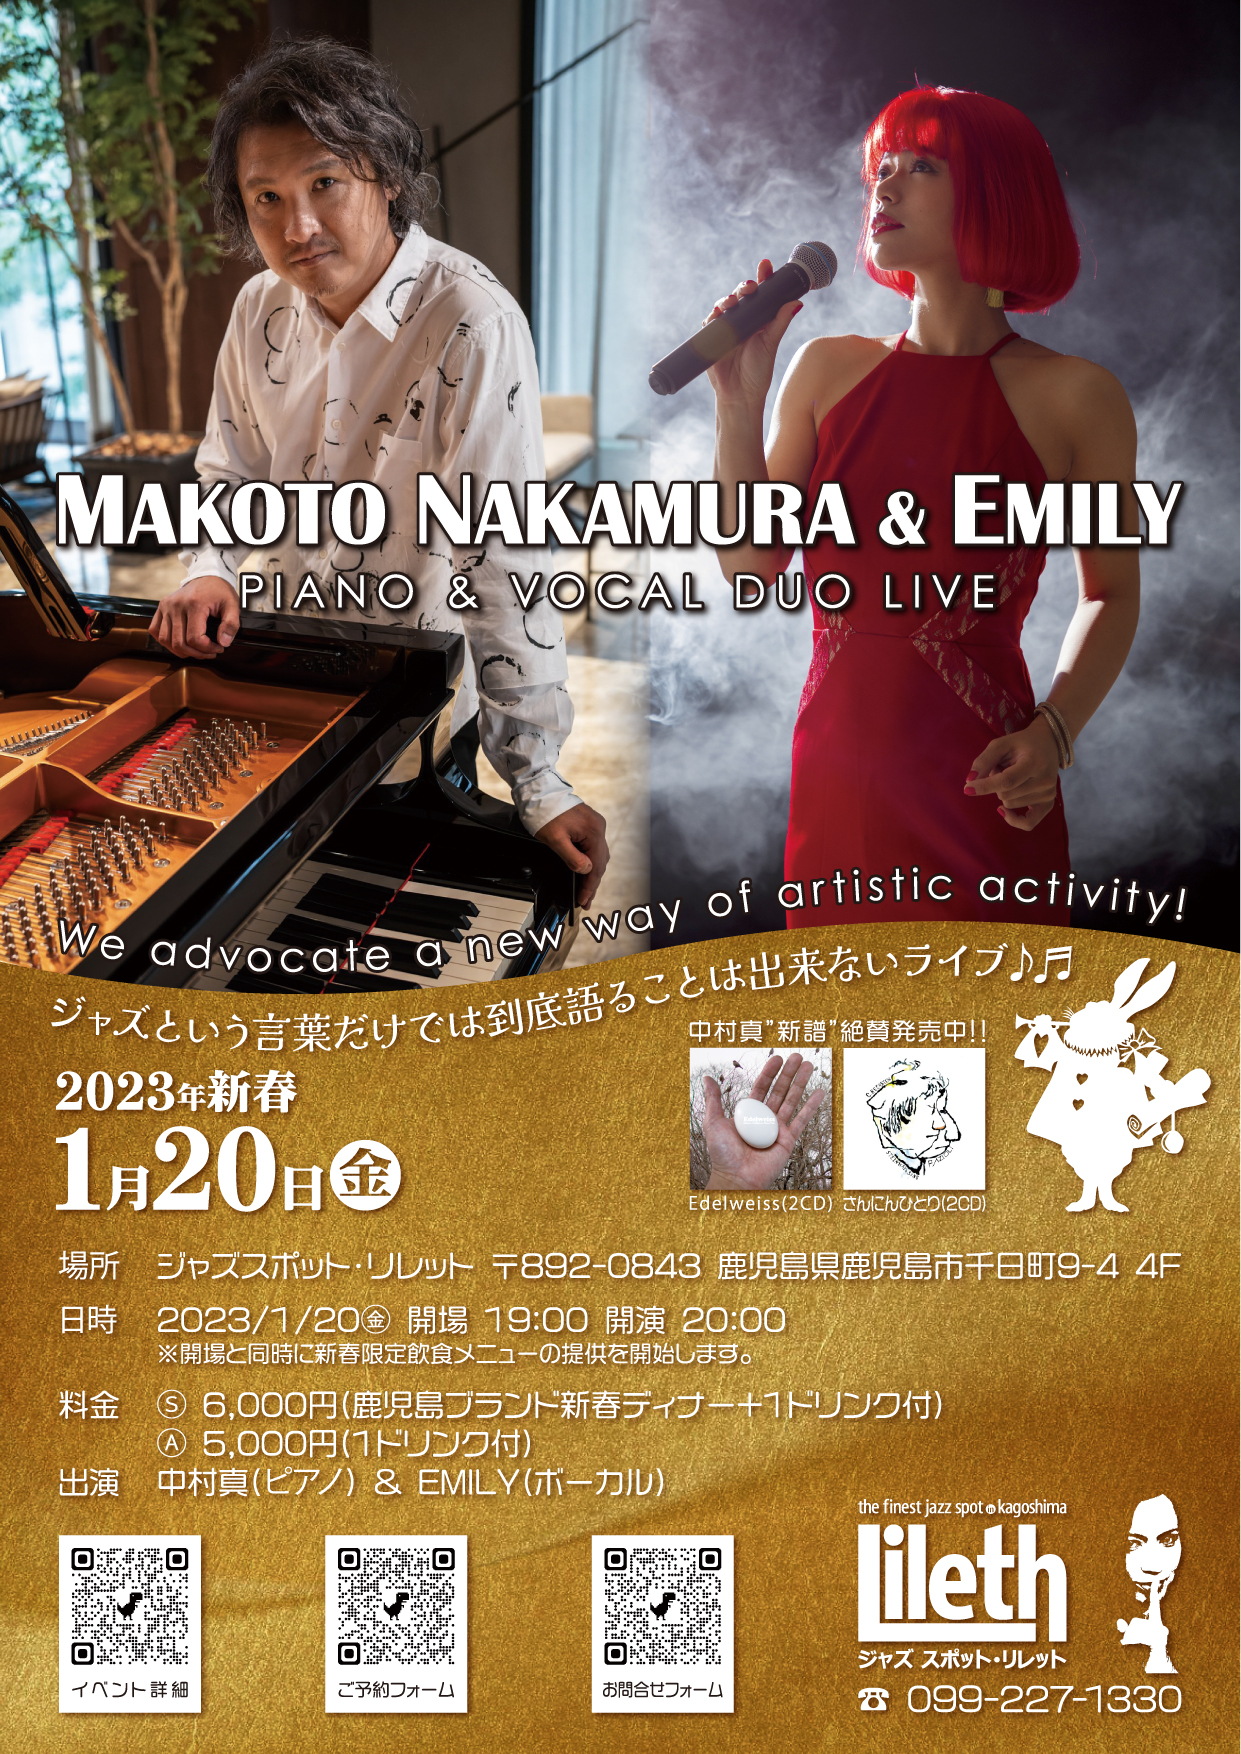 【ライブ告知】1/20㊎ 中村真 & EMILY - Piano & Vocal Duo Live